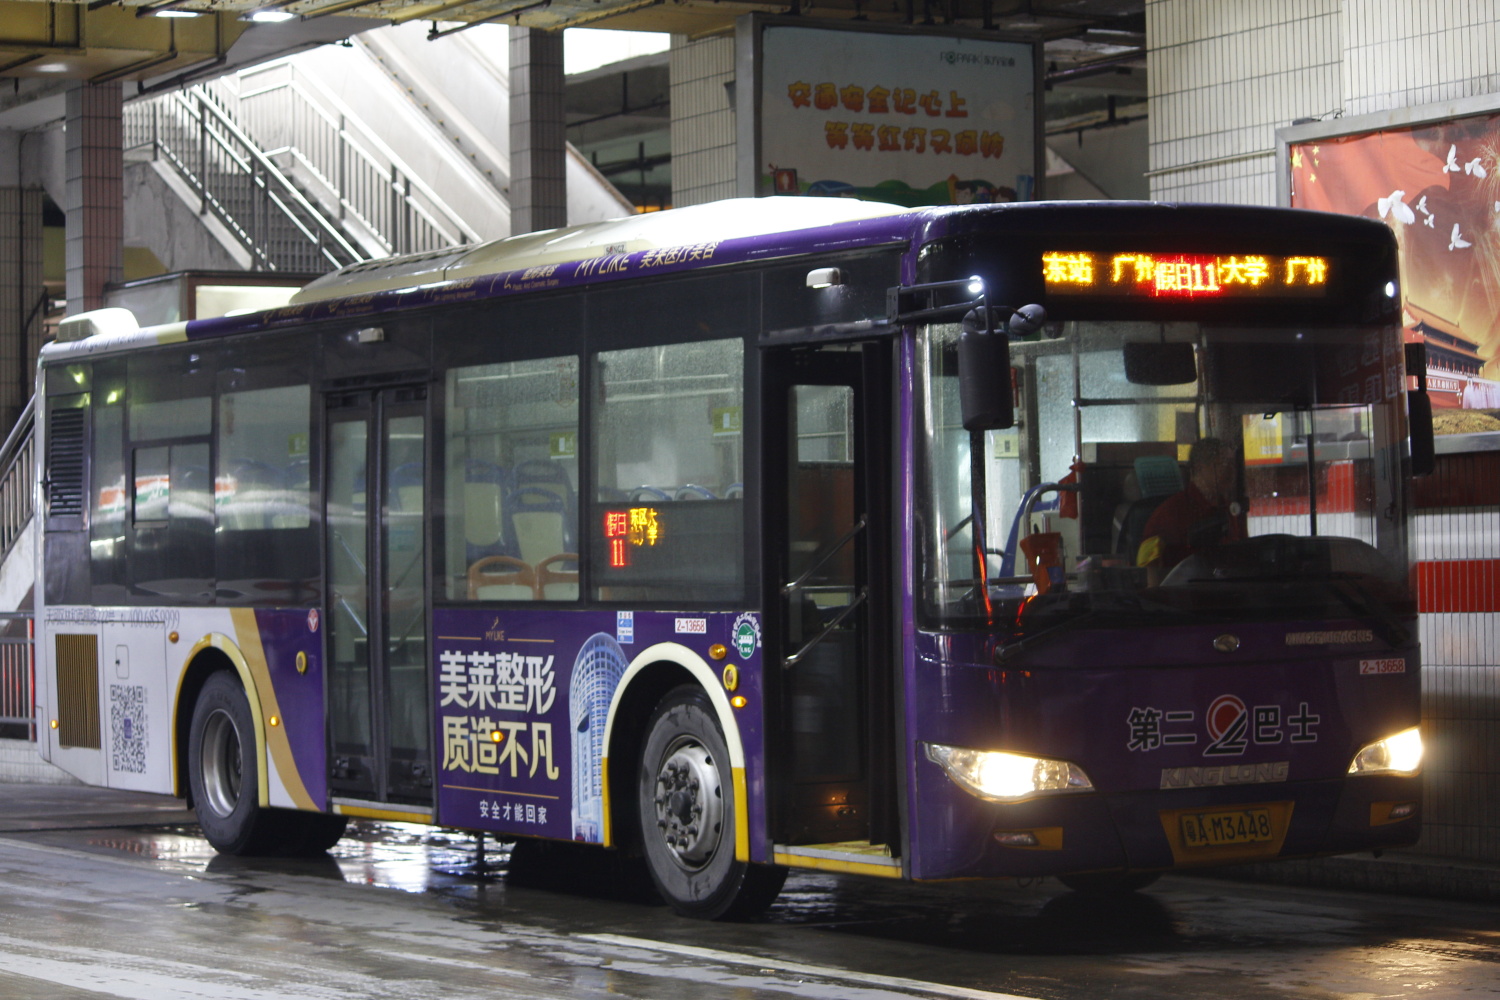 广州节假日公交专线11公交车路线